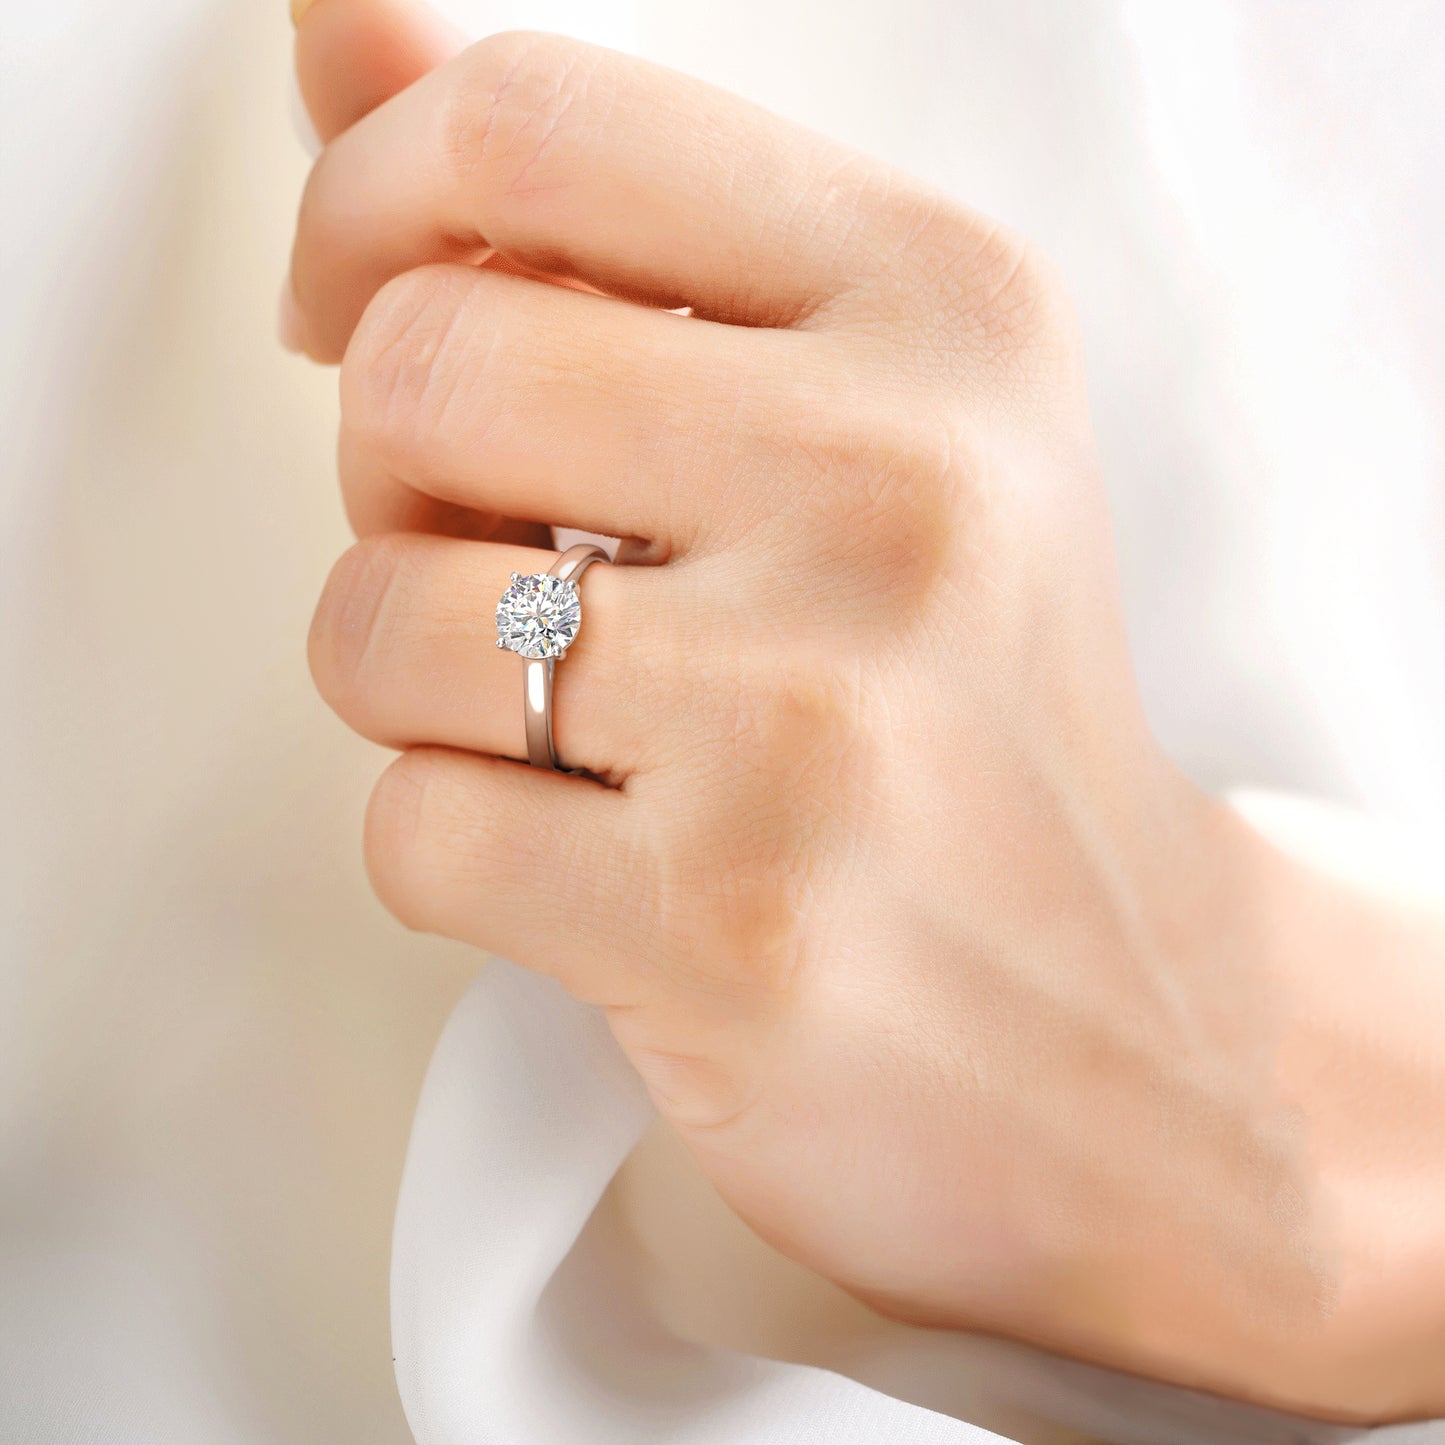 凯莉单石戒指镶有圆形明亮式切工钻石